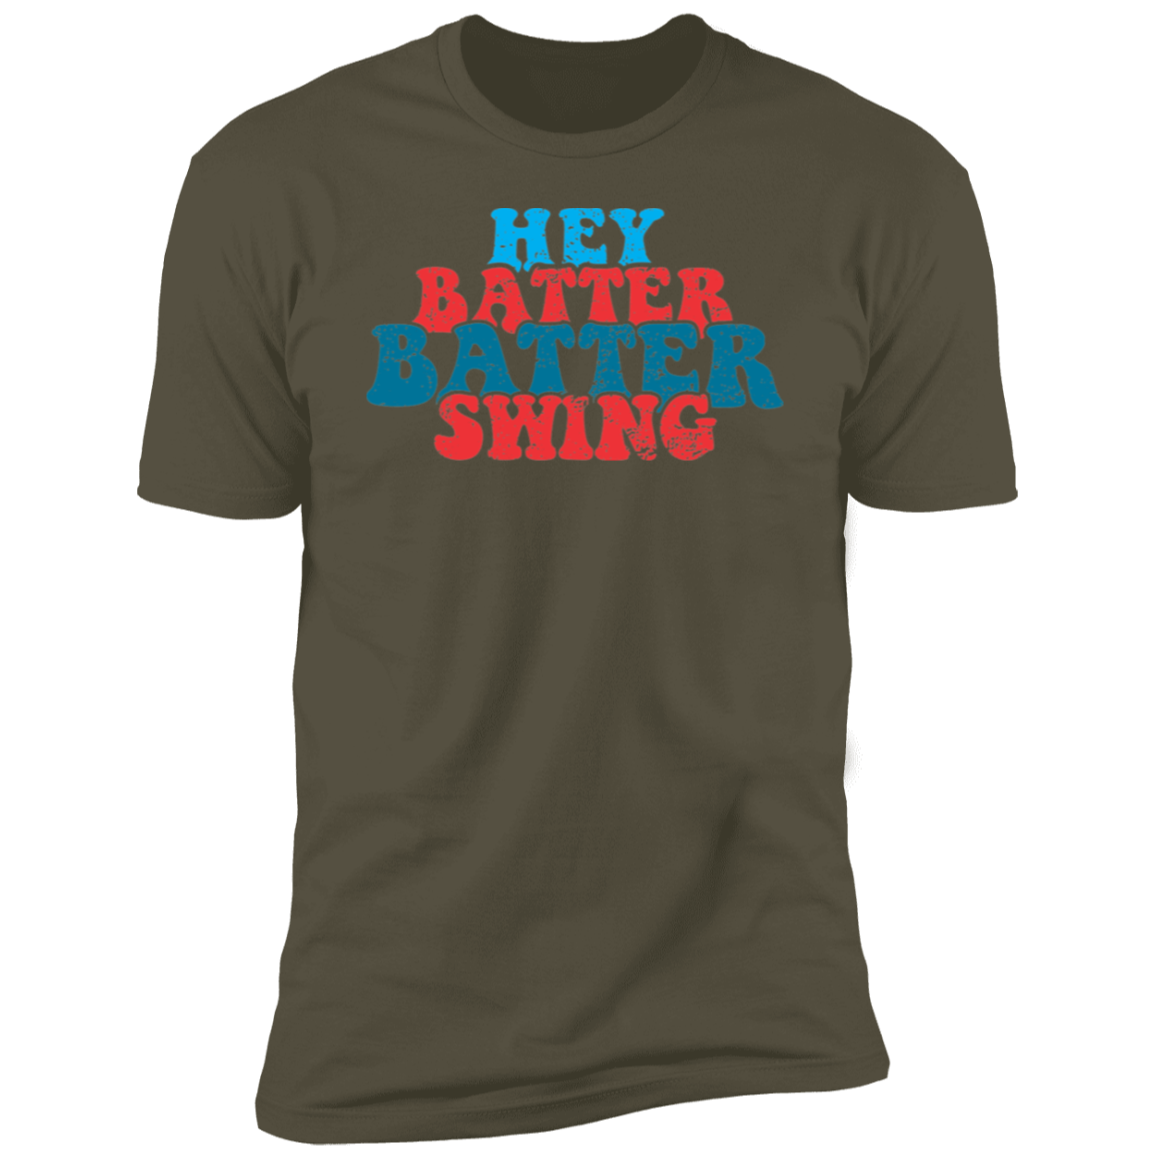 Hey Batter Batter Swing Premium Men's Tee